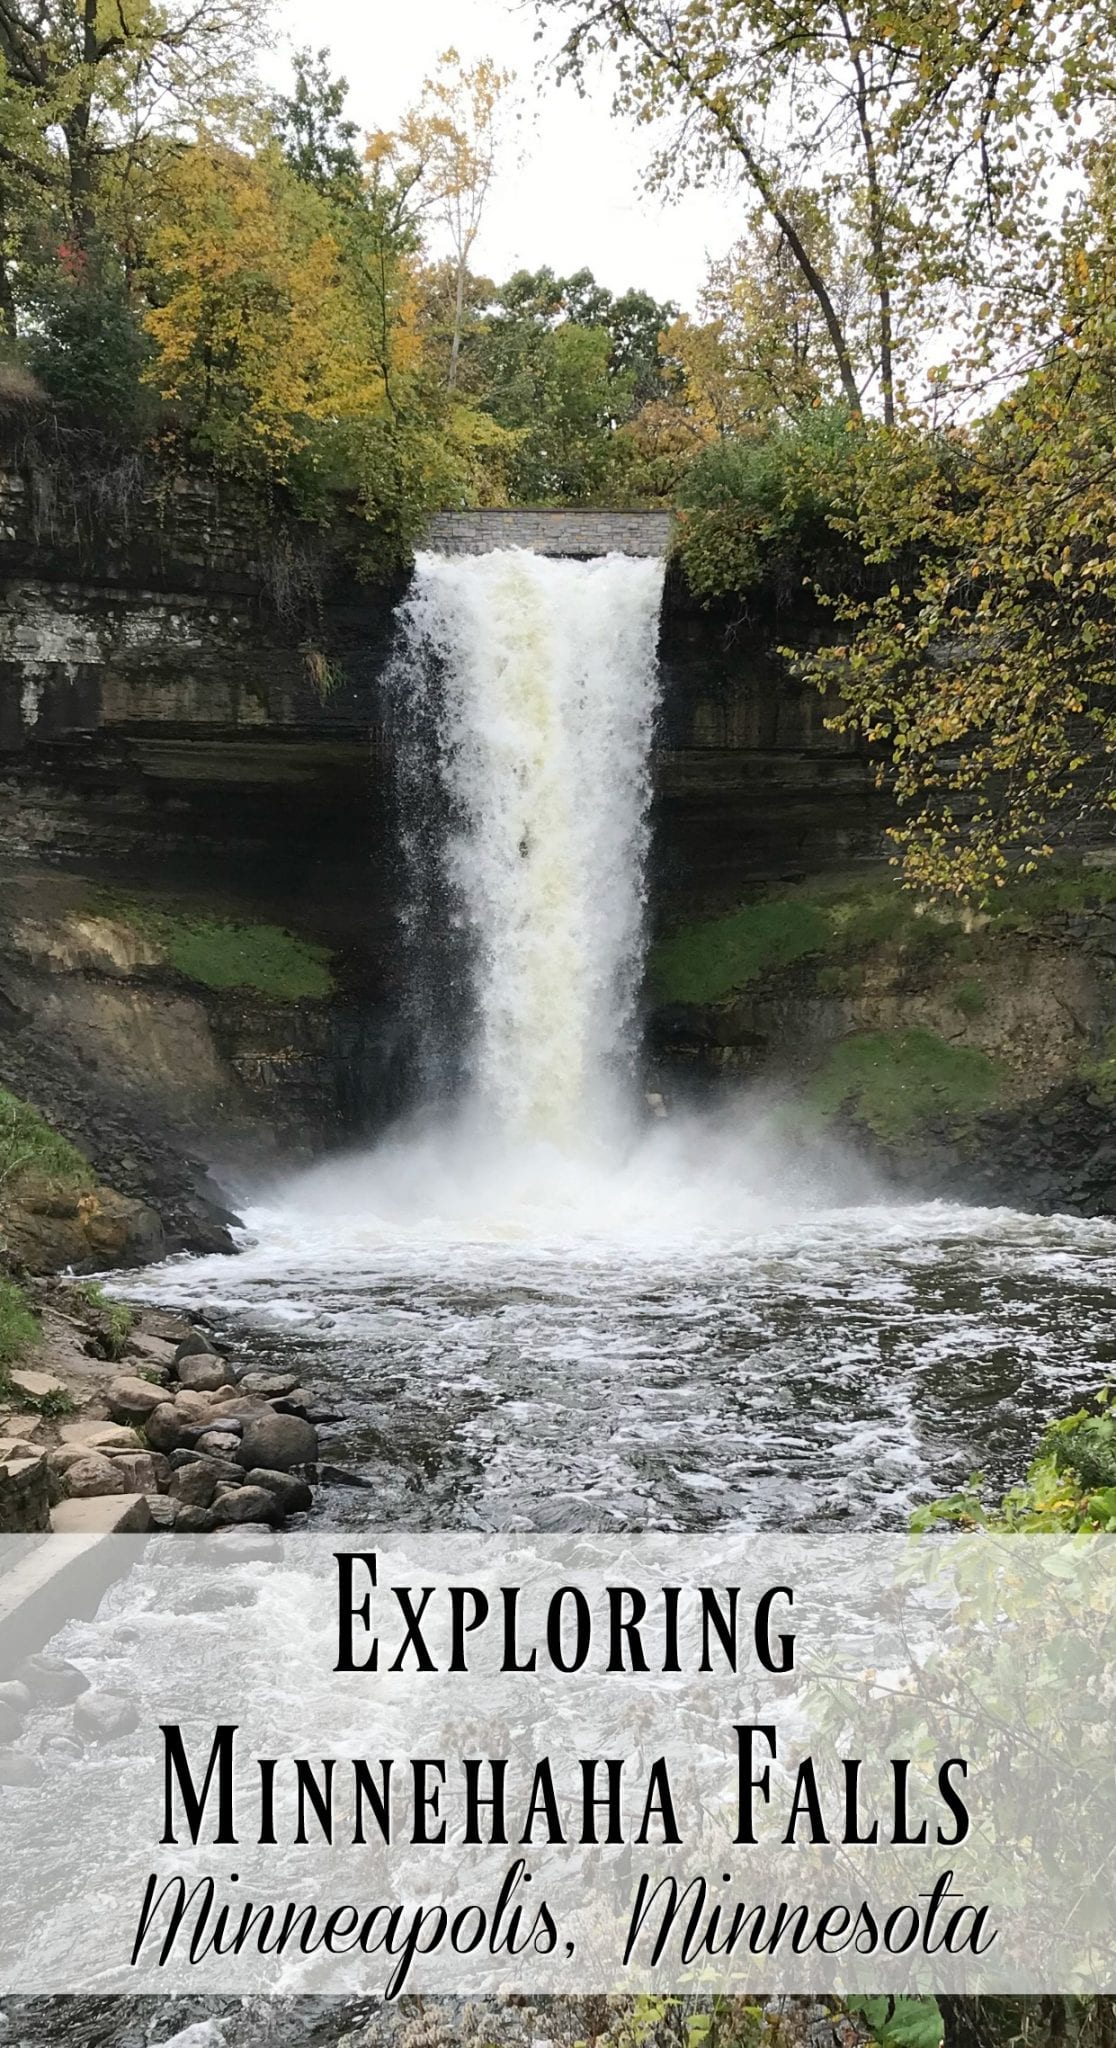 Minnehaha Falls in Minneapolis Minnesota